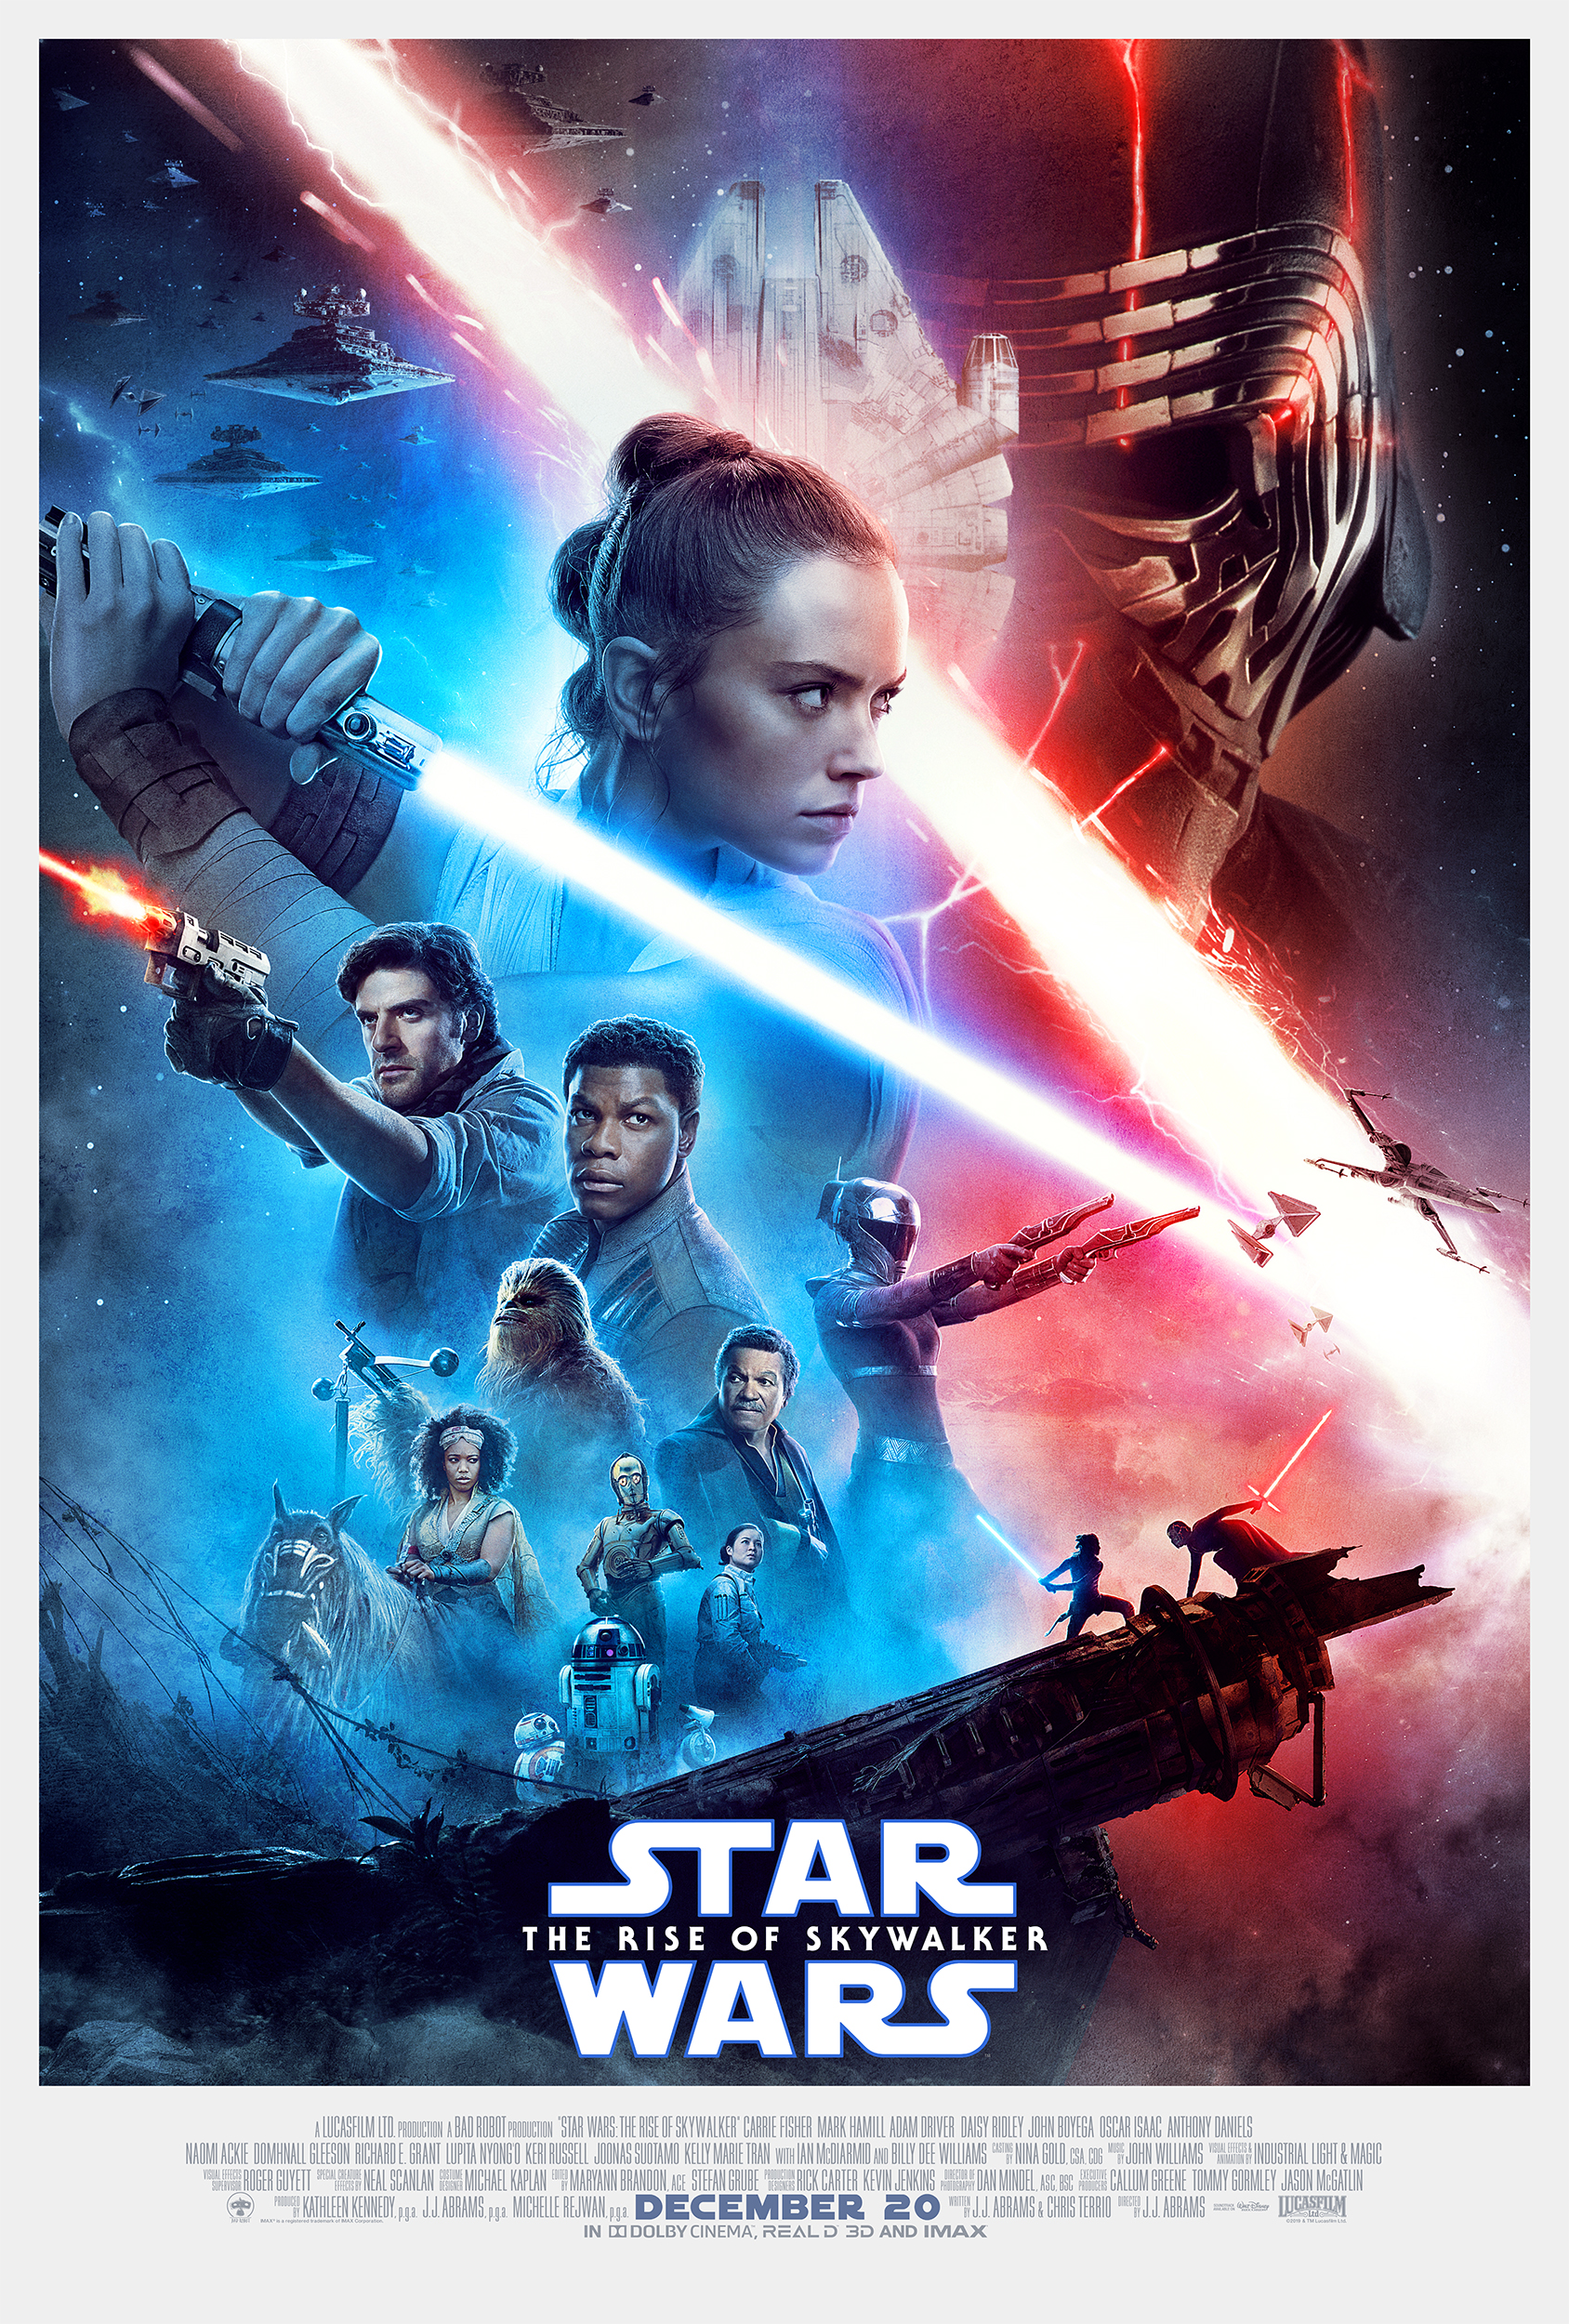 Star Wars: Episode IX The Rise of Skywalker | Wookieepedia | Fandom